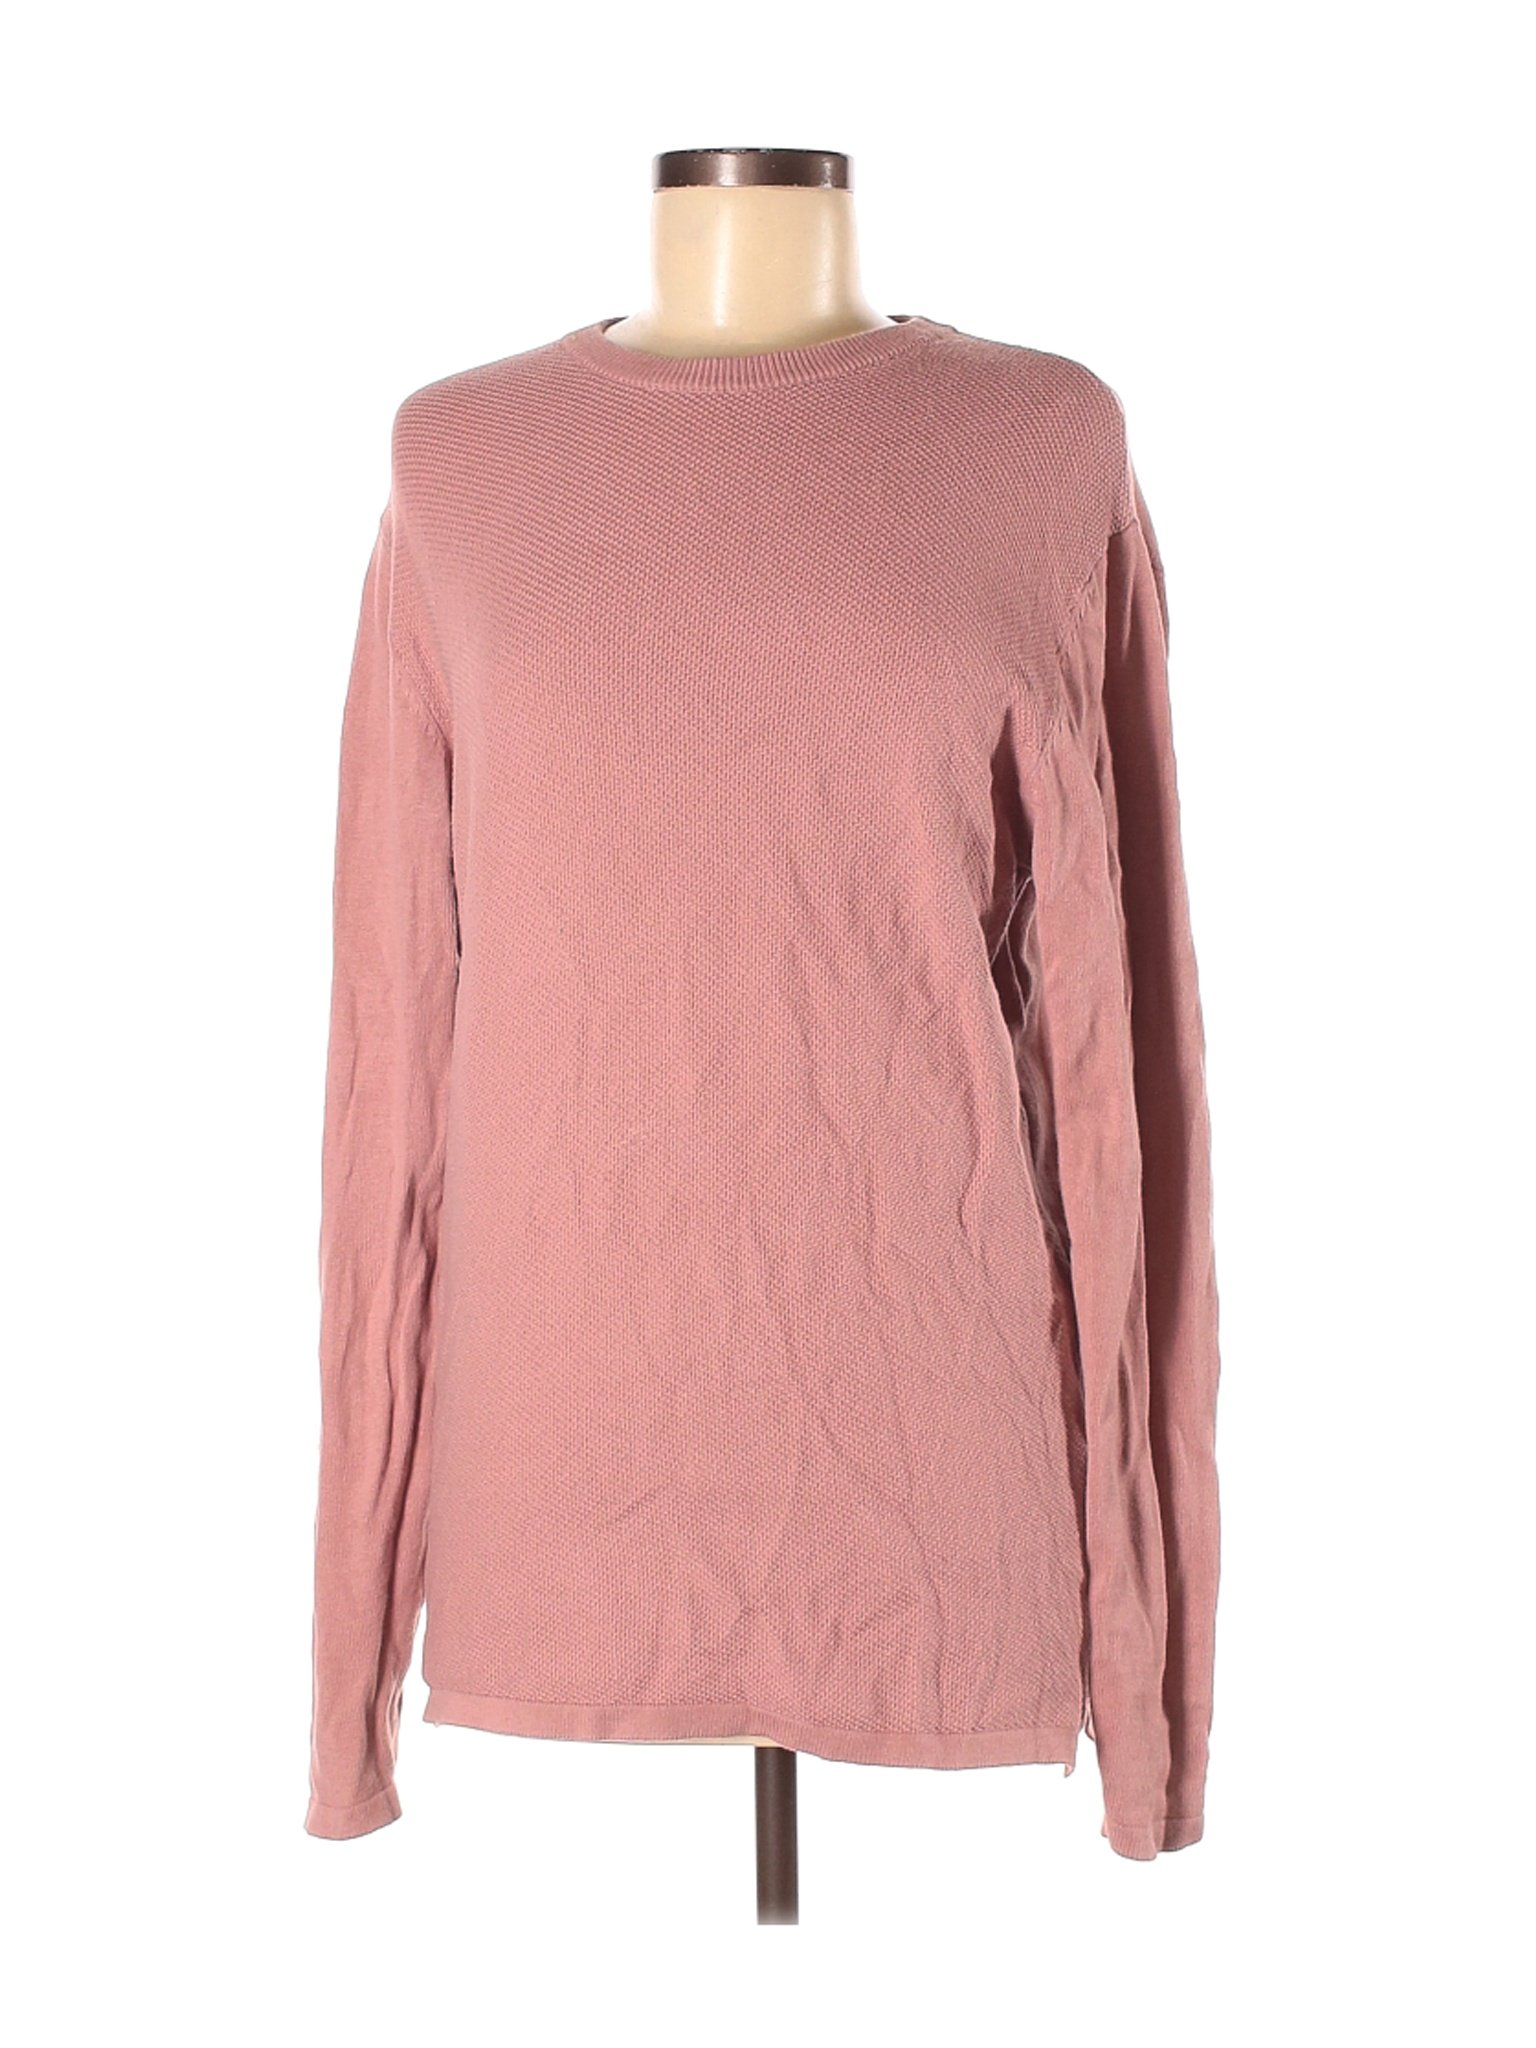 Primark Women Pink Pullover Sweater M | eBay